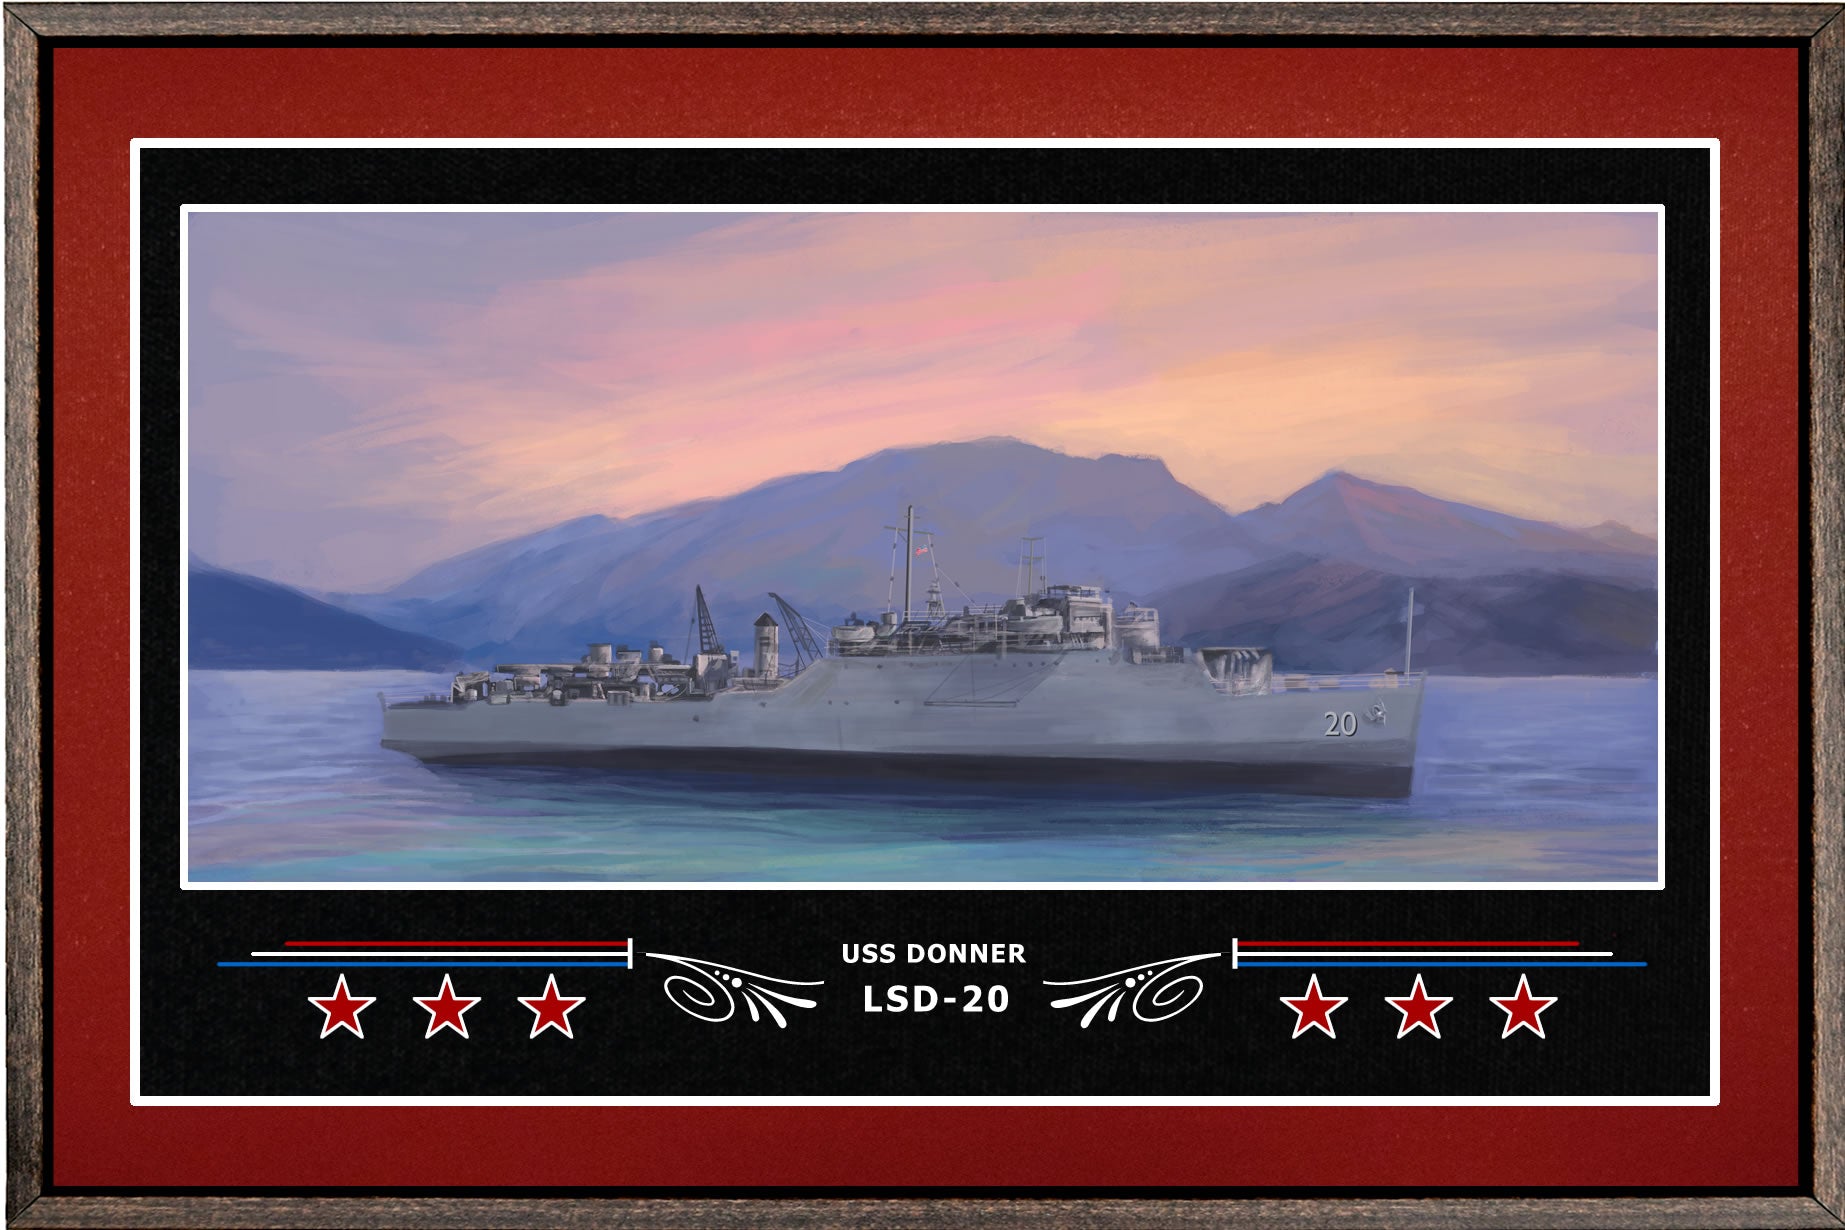 USS DONNER LSD 20 BOX FRAMED CANVAS ART BURGUNDY